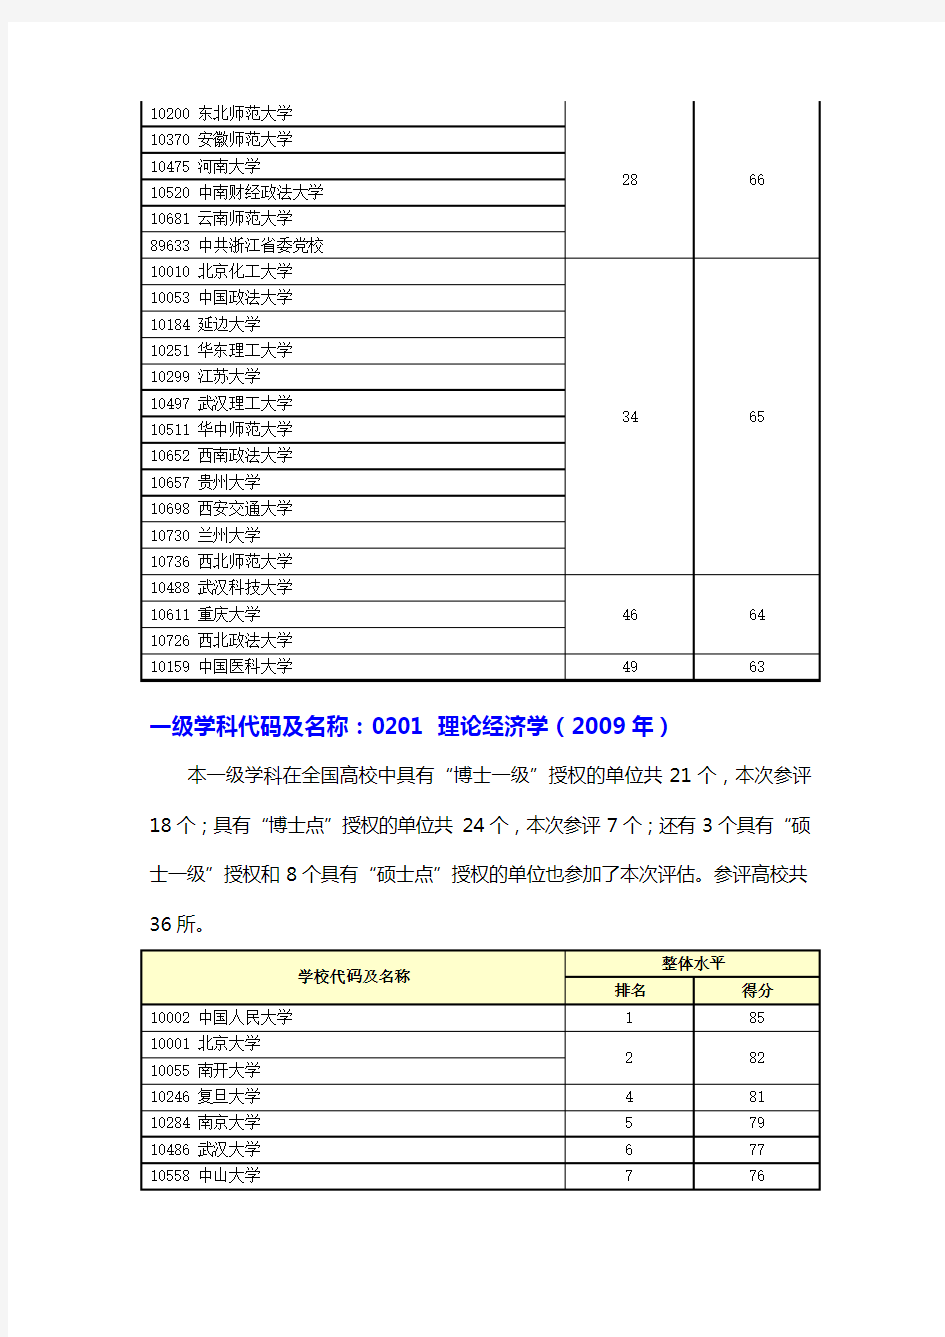 教育部学科评估高校排名结果(第二轮2007-2009)